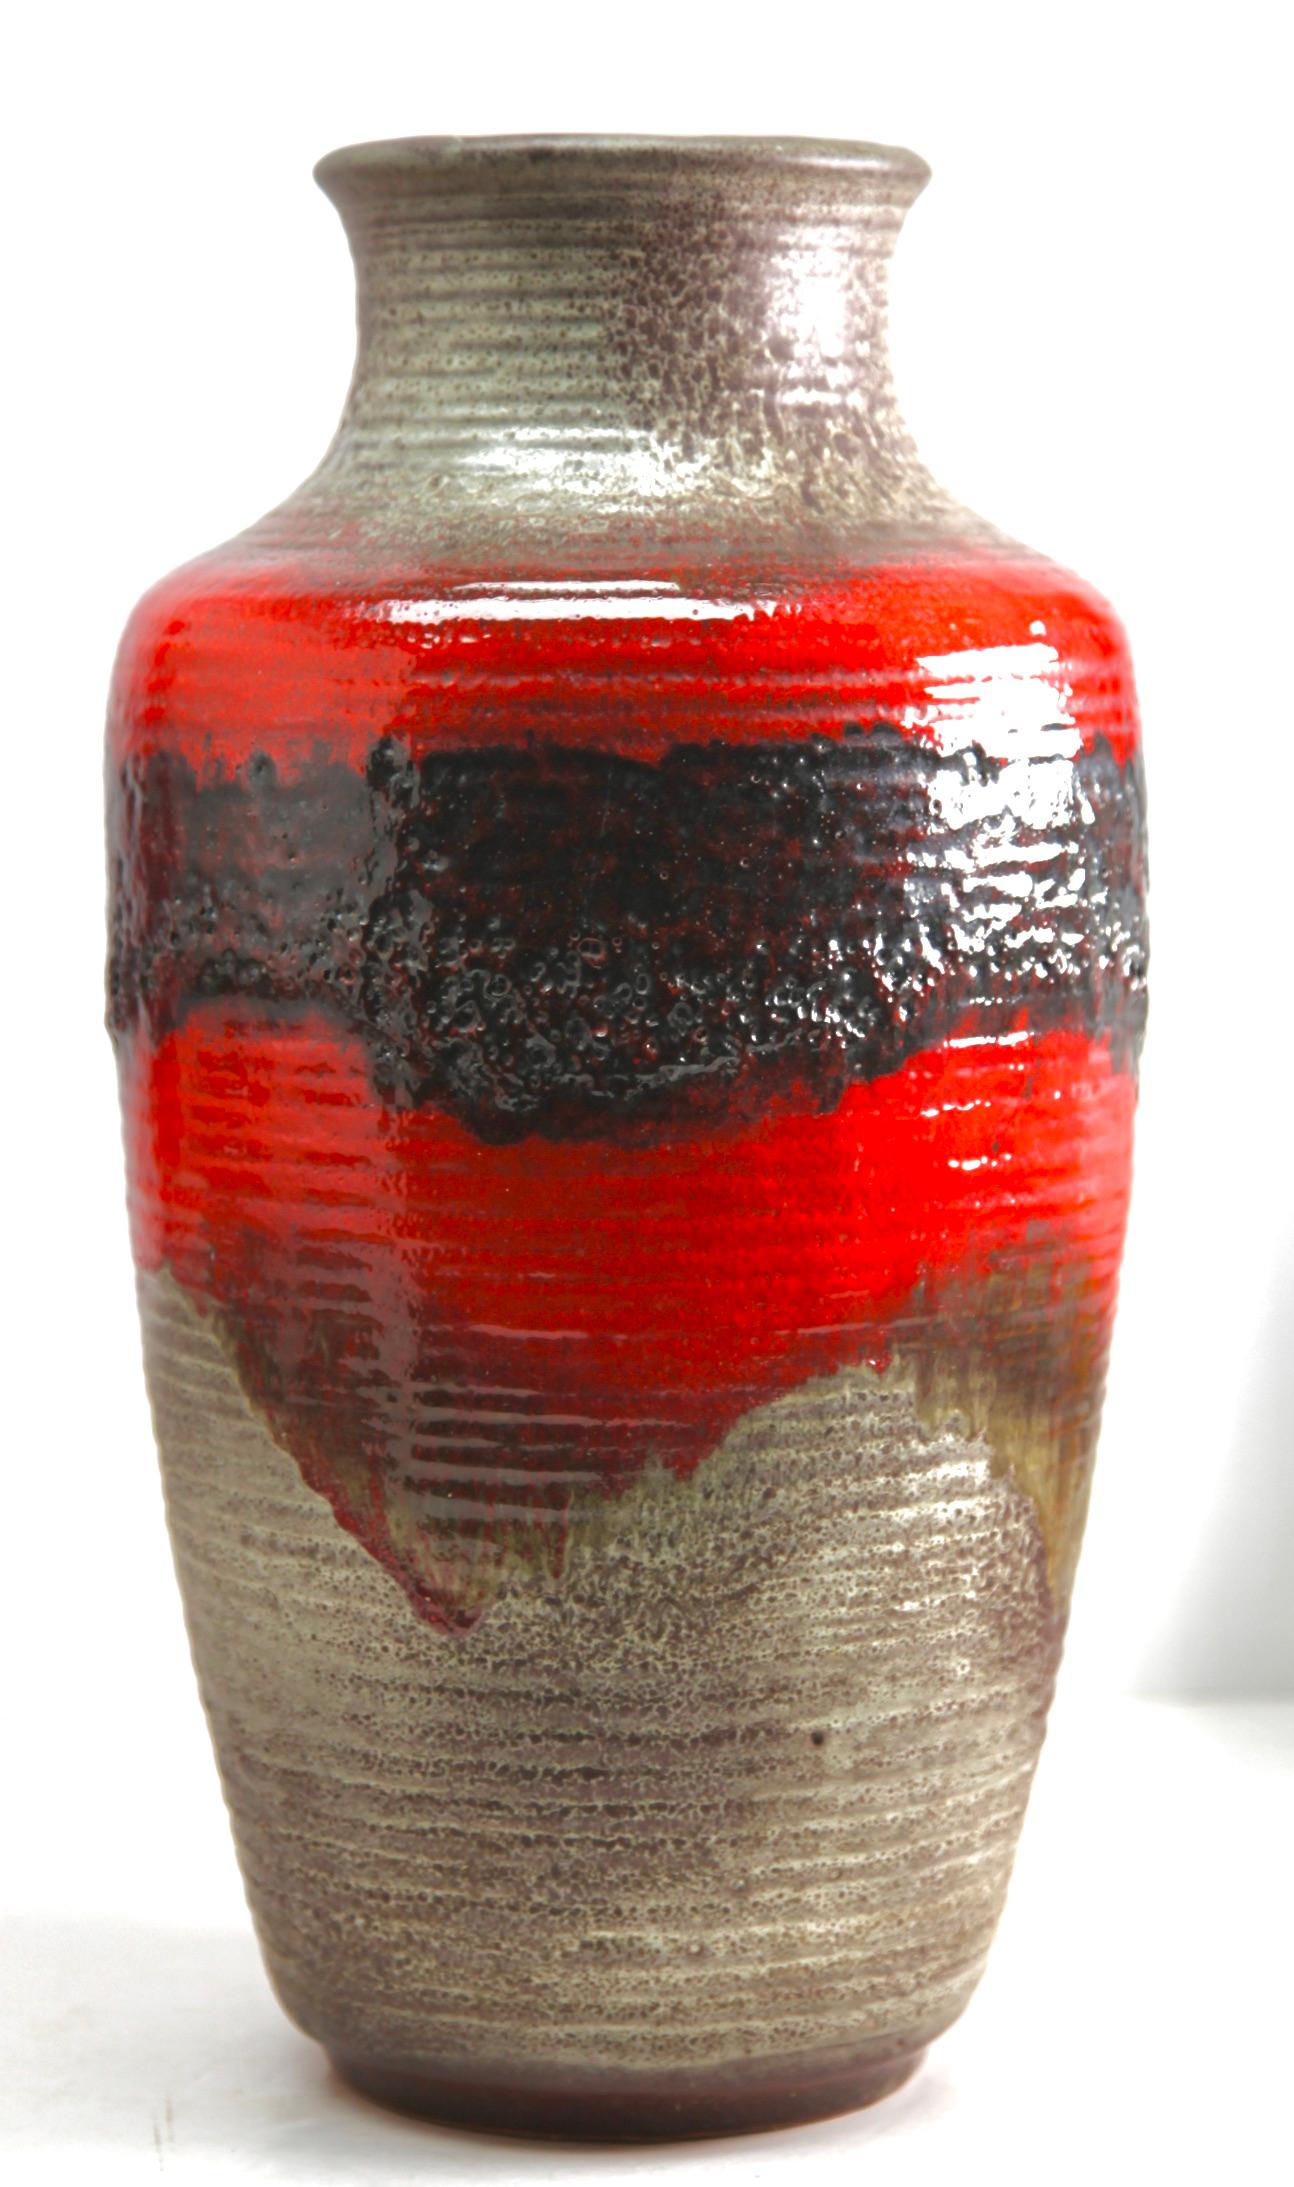 Carstens Tonnieshof
Goutte-à-goutte classique rouge lave sur fond anthracite. Vase de sol 
Poterie émaillée.
Estampillé sur la base. 7901-45 W-Allemagne.
Mesures : 46 x 24 cm 4,3 kg
La pièce est en excellent état et d'une grande beauté.
  
  